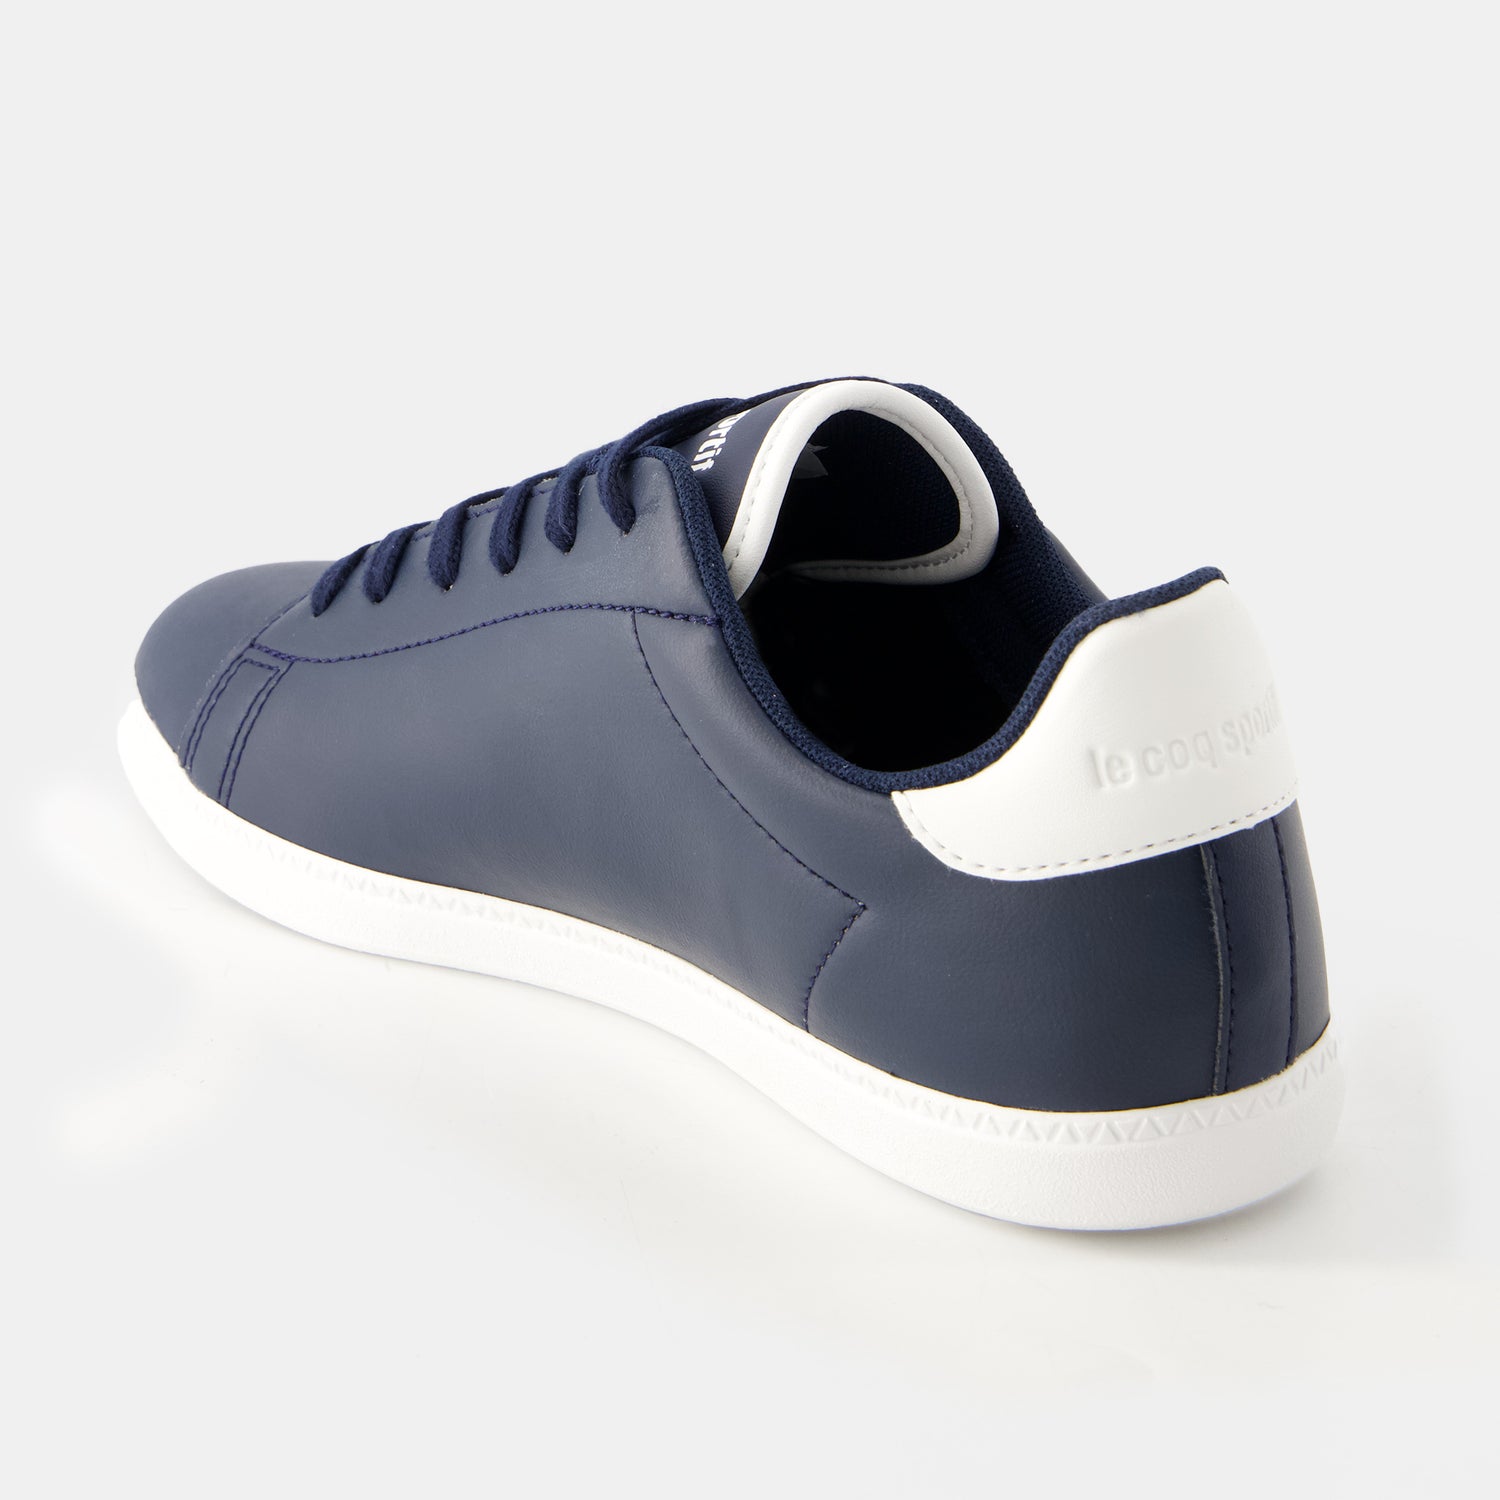 2410716-COURTSET_2 GS dress blue/optical white | Chaussures COURTSET_2 Pré-ado